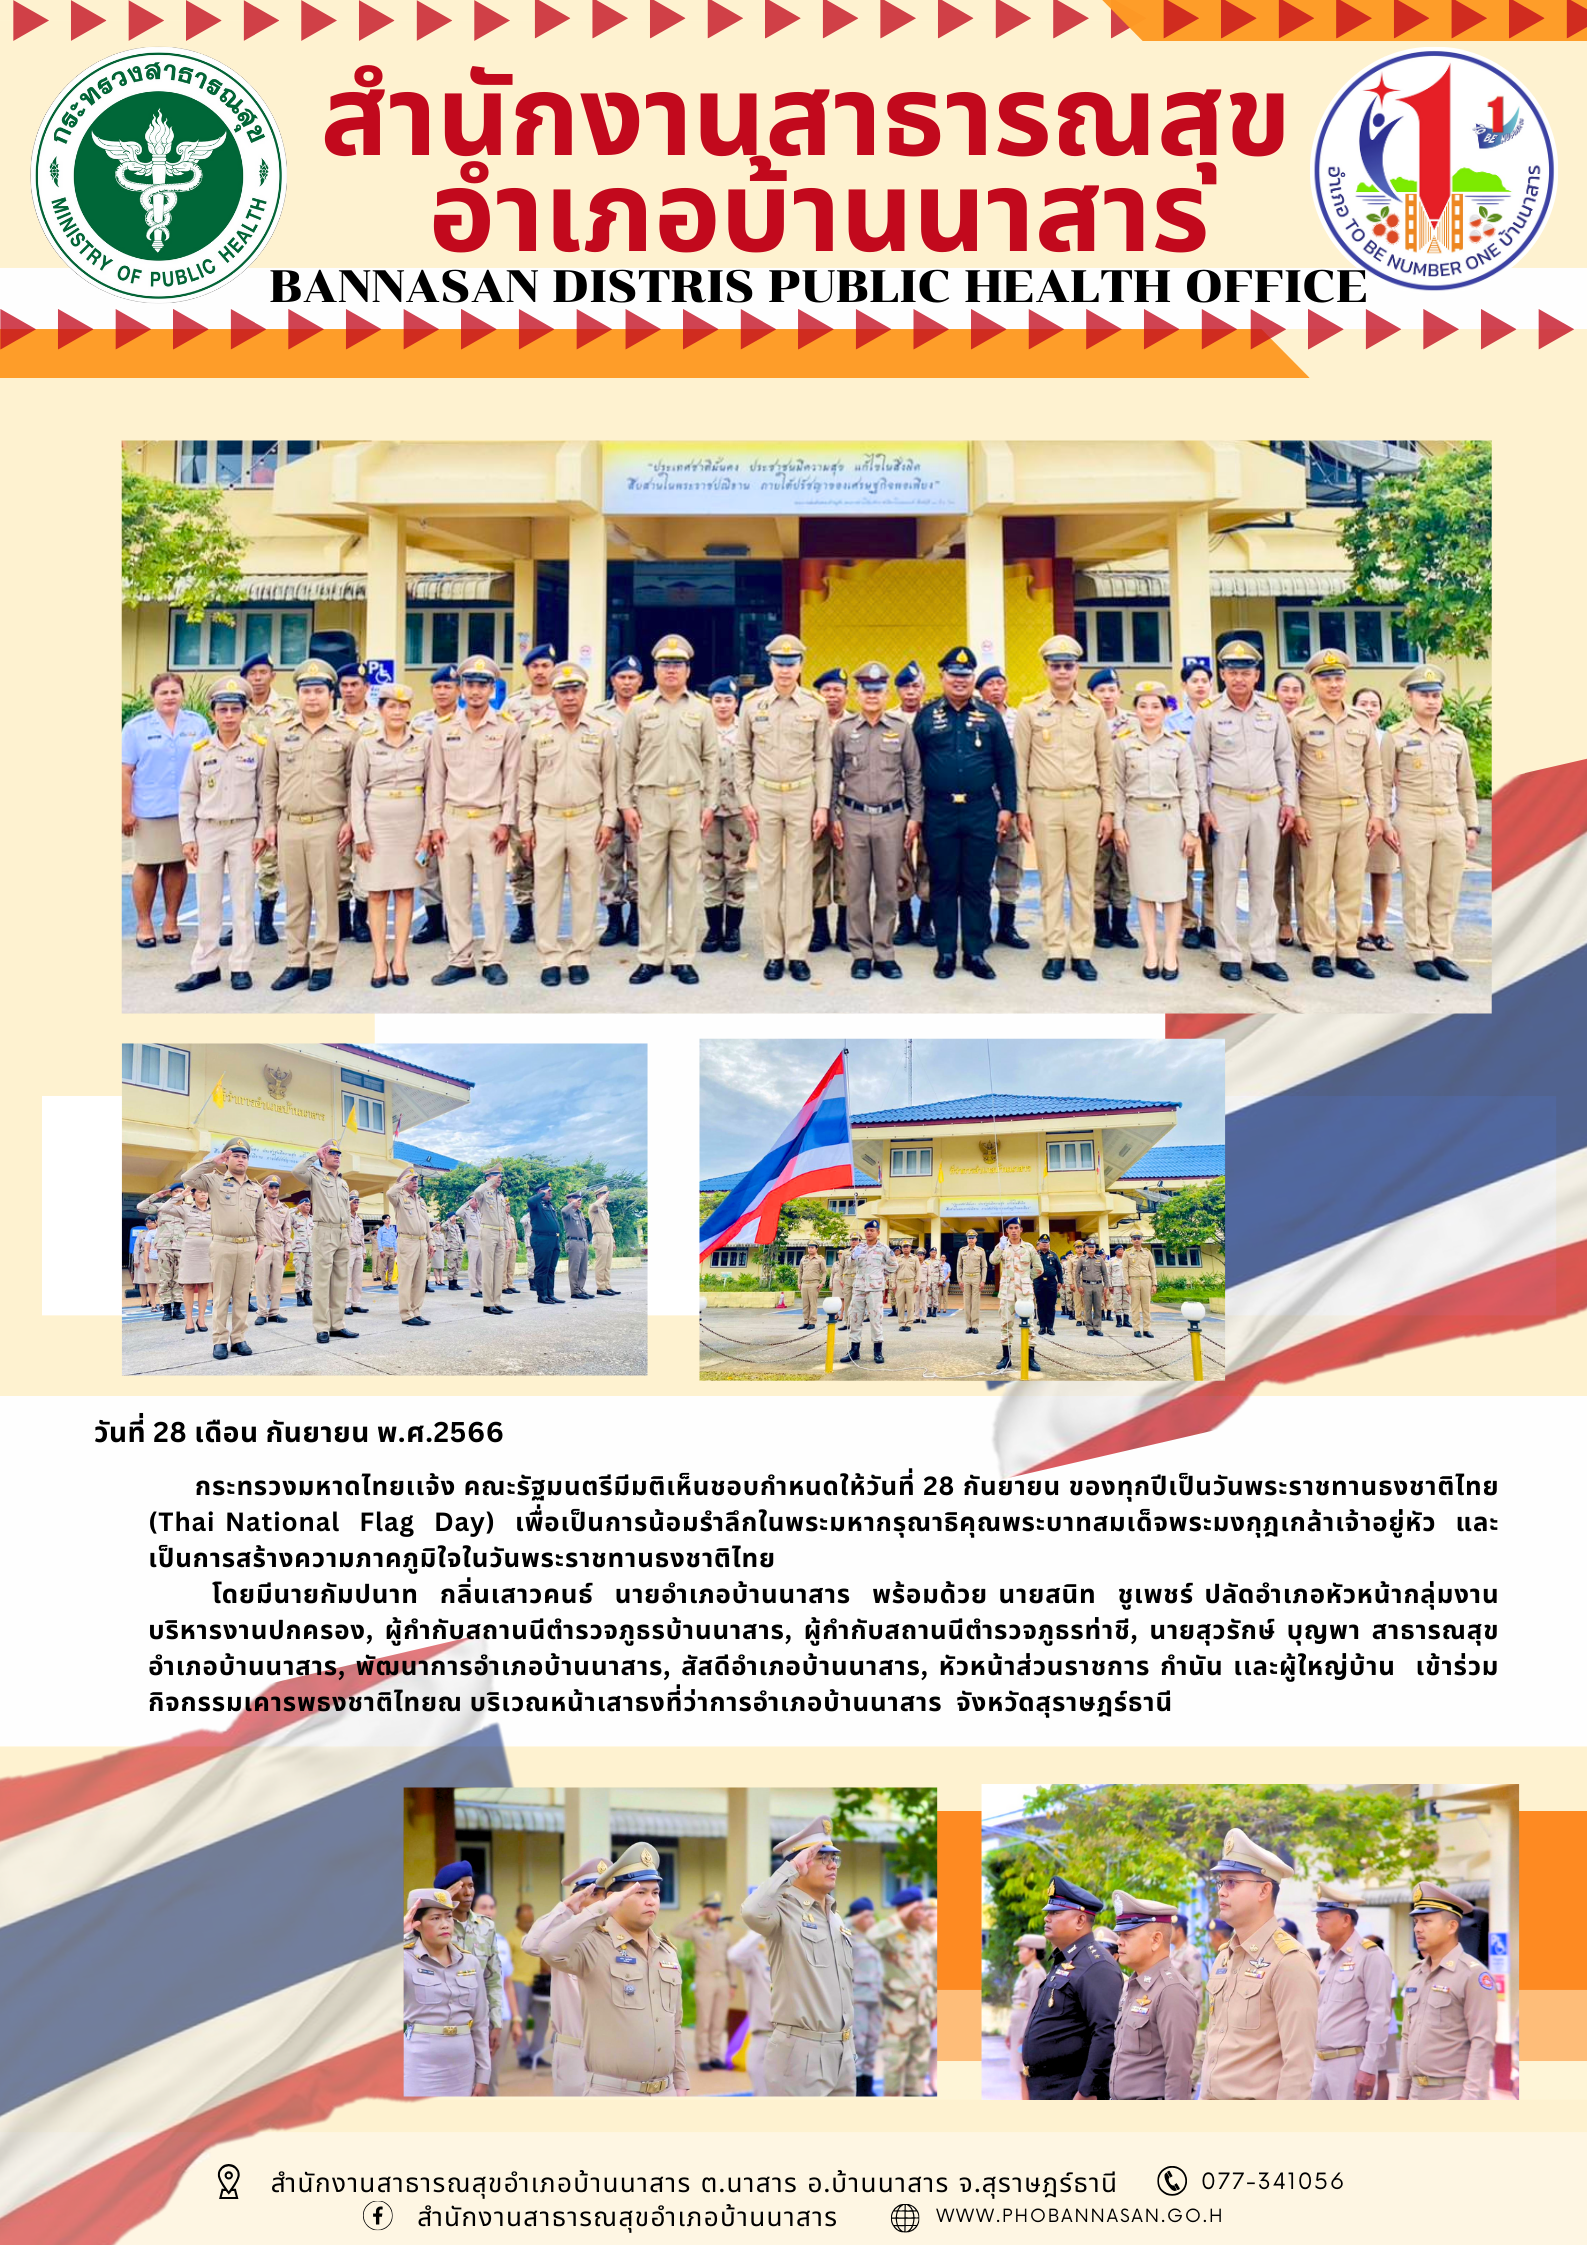 วันที่ 28 เดือน กันยายน พ.ศ.2566
กระทรวงมหาดไทยแจ้ง คณะรัฐมนตรีมีมติเห็นชอบกำหนดให้วันที่ 28 กันยายน ของทุกปีเป็นวันพระราชทานธงชาติไทย
(Thai National Flag  Day) เพื่อเป็นการน้อมรำลึกในพระมหากรุณาธิคุณพระบาทสมเด็จพระมงกุฎเกล้าเจ้าอยู่หัว และ
เป็นการสร้างความภาคภูมิใจในวันพระราชทานธงชาติไทย
โดยมีนายกัมปนาท กลิ่นเสาวคนธ์ นายอำเภอบ้านนาสาร พร้อมด้วย นายสนิท ชเพชร์ ปลัดอำเภอหัวหน้ากลุ่มงาน
บริหารงานปกครอง, ผู้กำกับสถานนีตำรวจภูธรบ้านนาสาร, ผู้กำกับสถานนีตำรวจภูธรท่าชี, นายสุวรักษ์ บุญพา สาธารณสุข
อำเภอบ้านนาสาร, พัฒนาการอำเภอบ้านนาสาร, สัสดีอำเภอบ้านนาสาร, หัวหน้าส่วนราชการ กำนัน และผู้ใหญ่บ้าน เข้าร่วม
กิจกรรมเคารพธงชาติไทยณ บริเวณหน้าเสาธงที่ว่าการอำเภอบ้านนาสาร จังหวัดสุราษฎร์ธานี
สำนักงานสาธารณสุขอำเภอบ้านนาสาร ต.นาสาร อ.บ้านนาสาร จ.สุราษฎร์ธานี